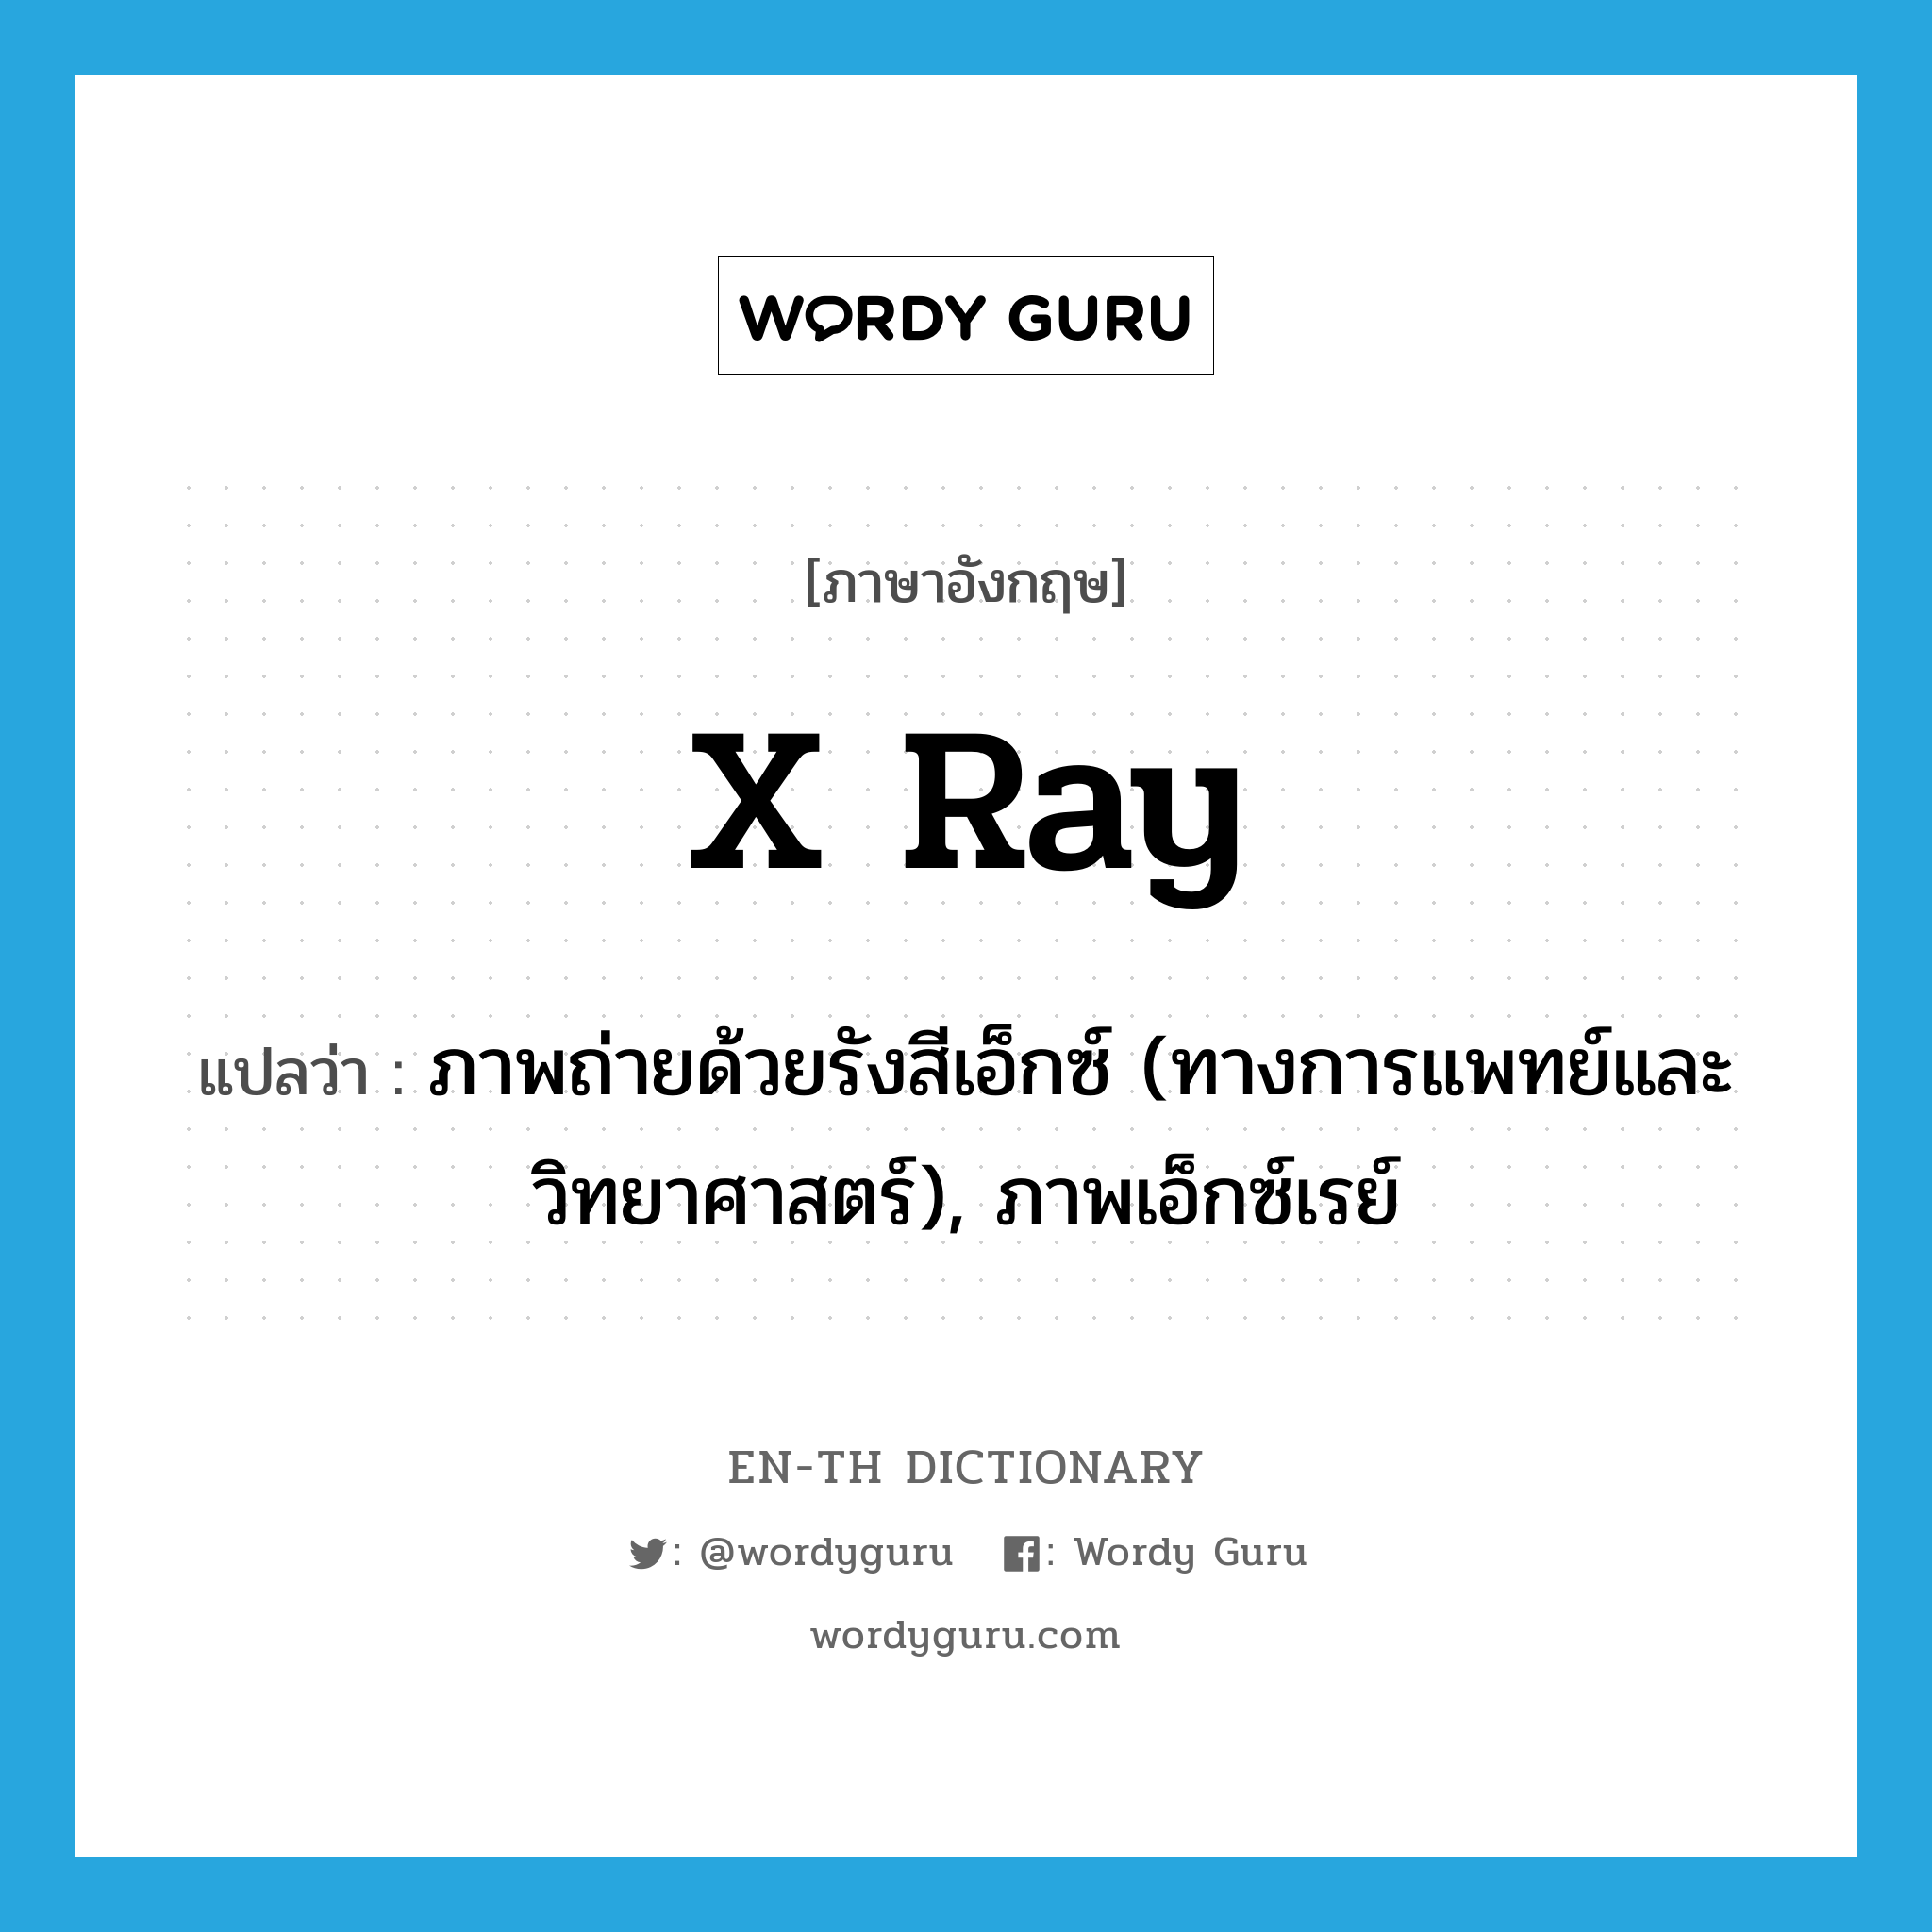 x-ray แปลว่า?, คำศัพท์ภาษาอังกฤษ x ray แปลว่า ภาพถ่ายด้วยรังสีเอ็กซ์ (ทางการแพทย์และวิทยาศาสตร์), ภาพเอ็กซ์เรย์ ประเภท N หมวด N